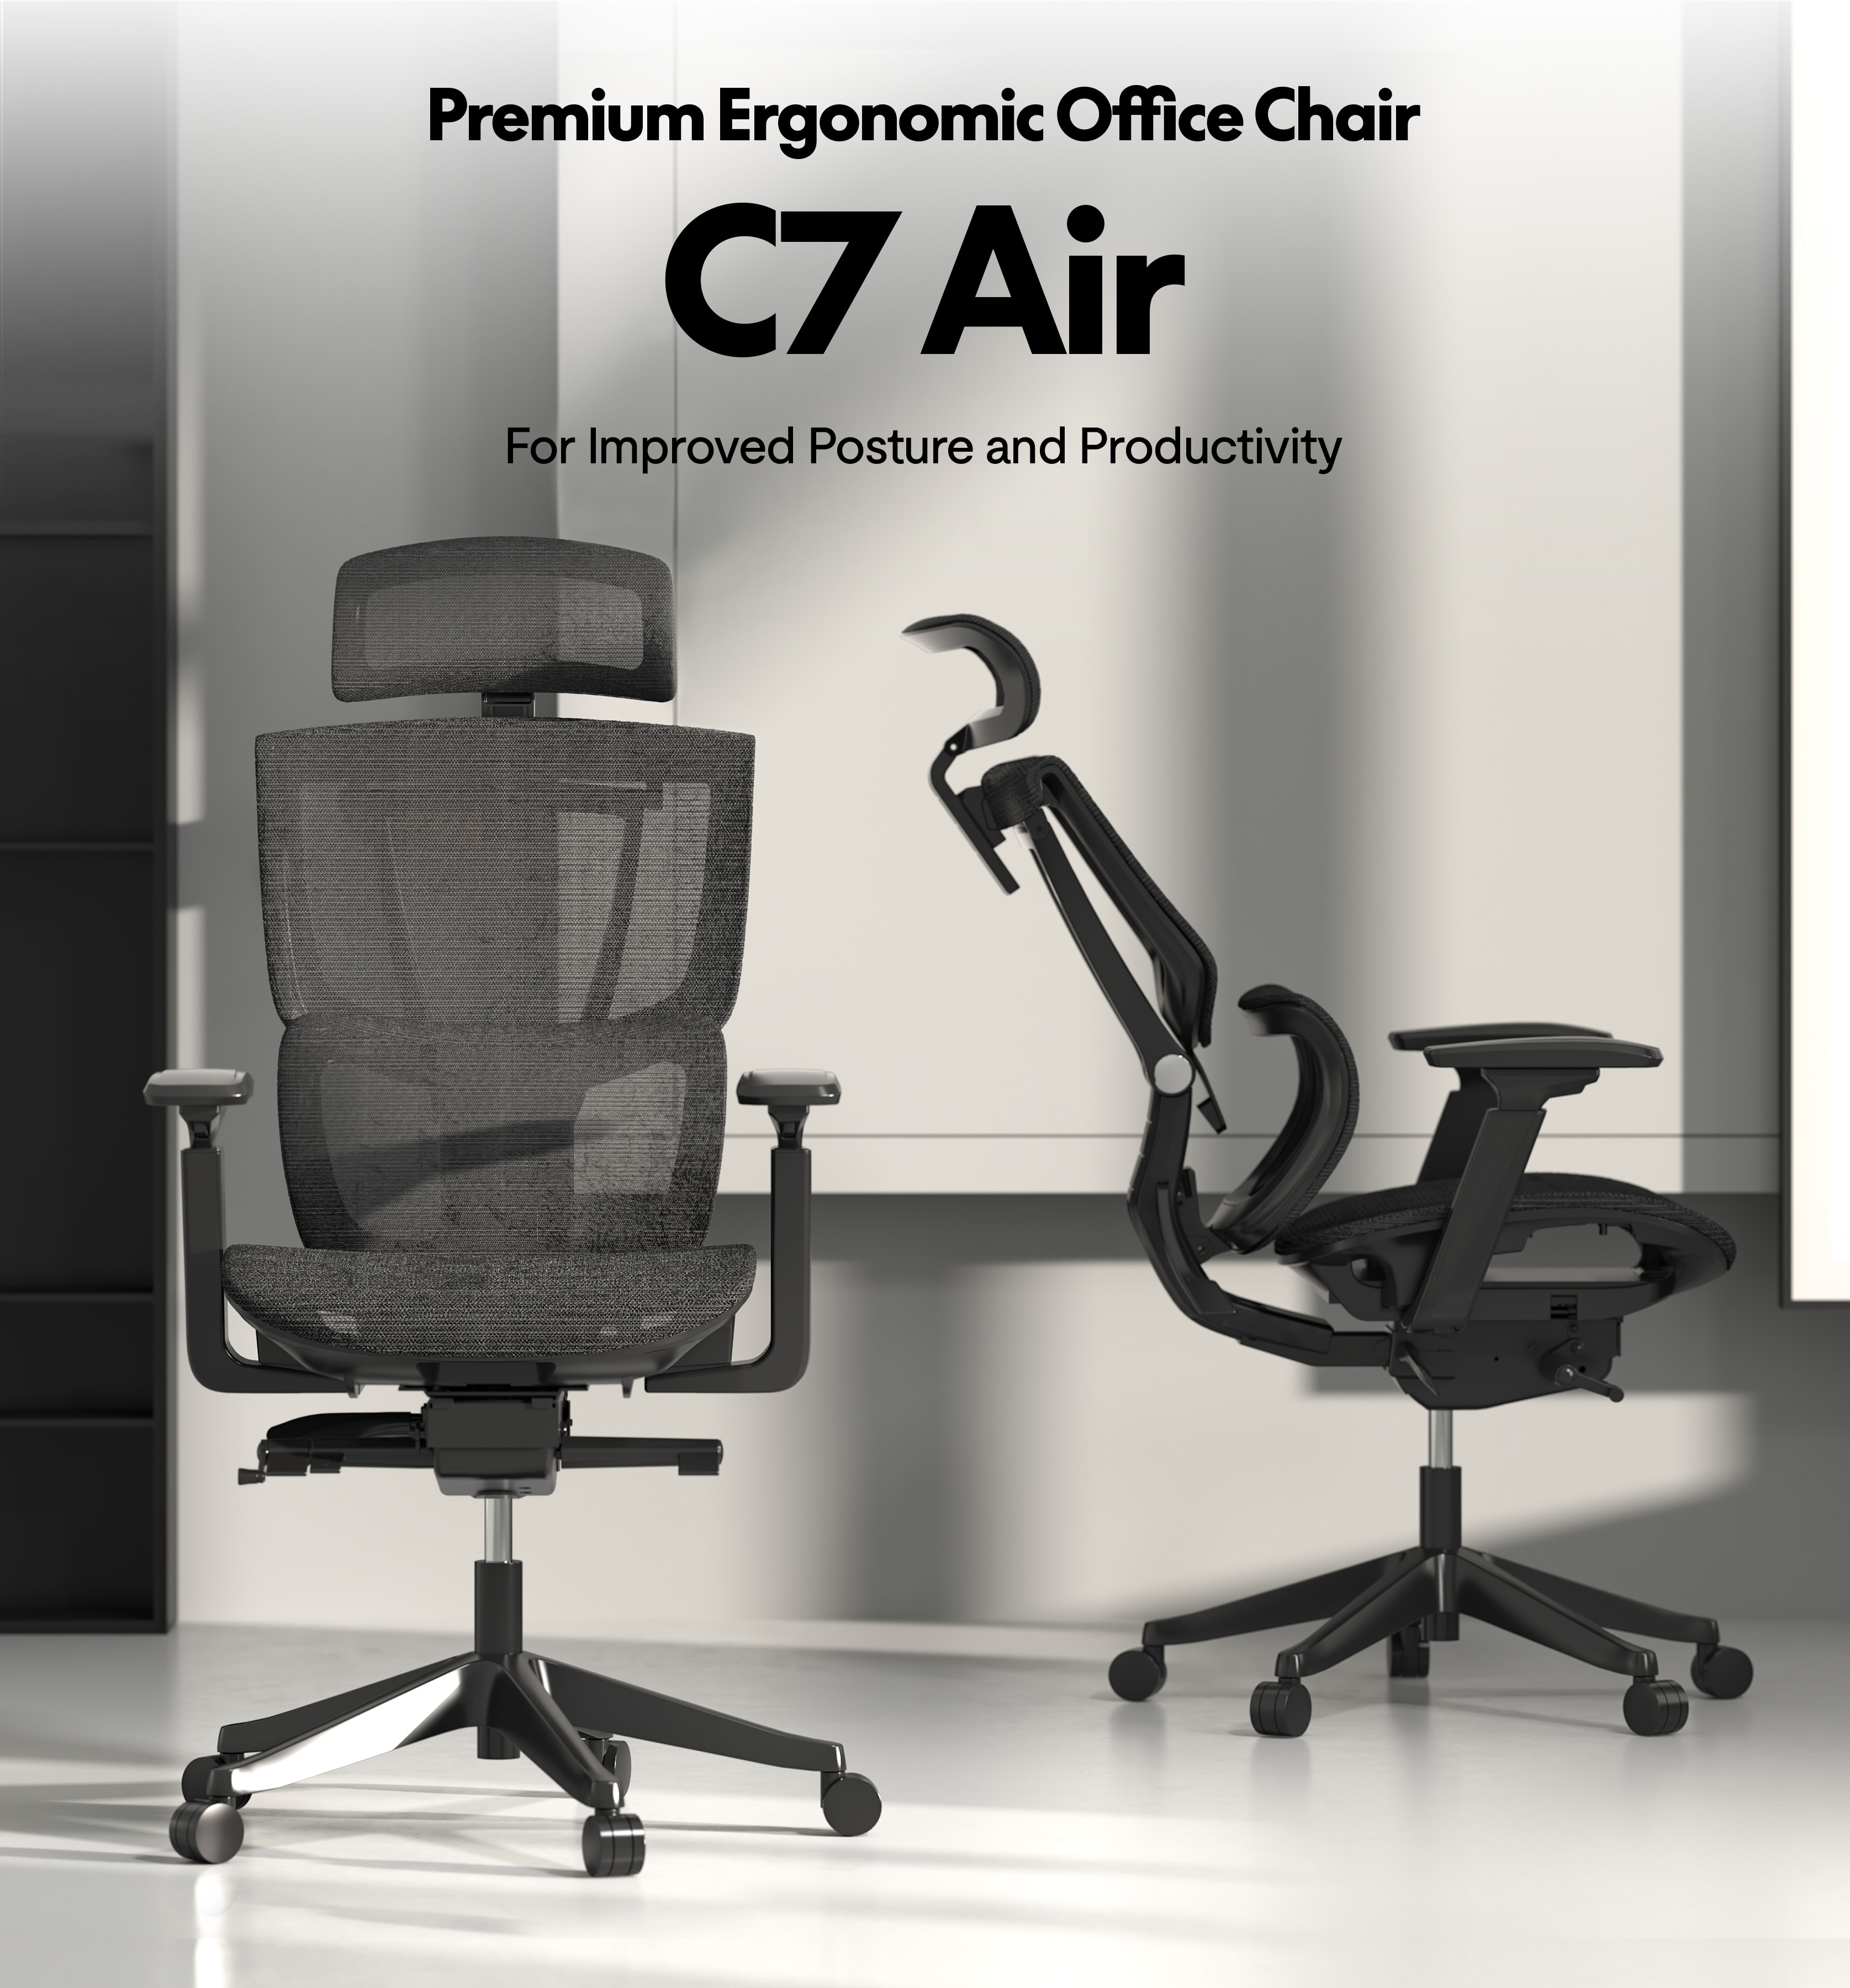 Premium Ergonomic Office Chair C7 AIR